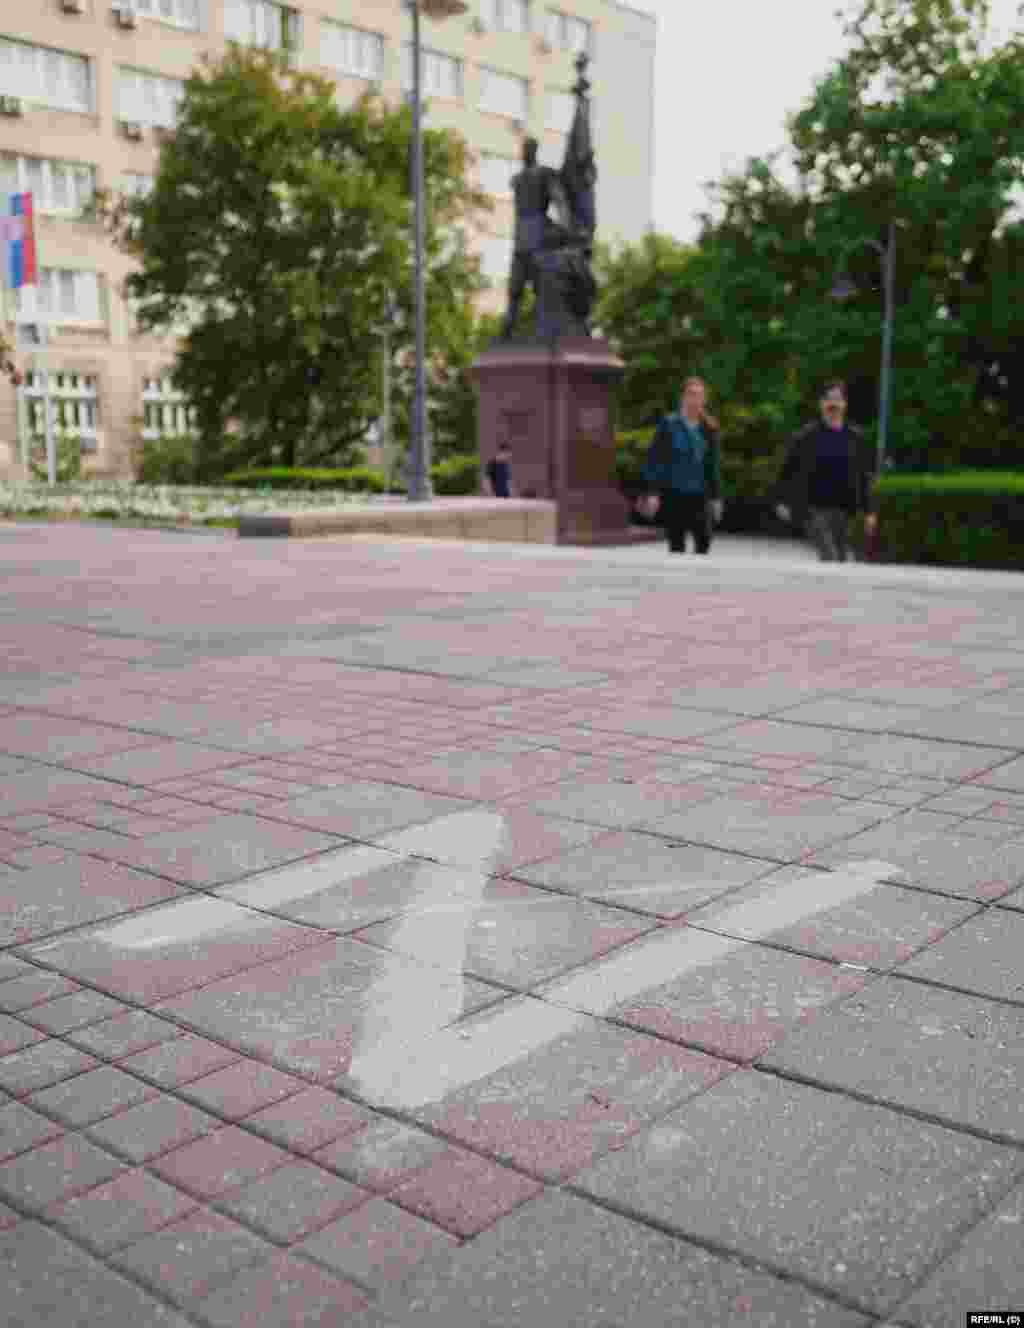 Egy áthúzott Z betű II. Miklós orosz cár szobra előtt. Oroszbarát aktivisták több gyűlést is szerveztek idén a szobor előtti térre, amelyeket felvonulások követtek Belgrád központjában